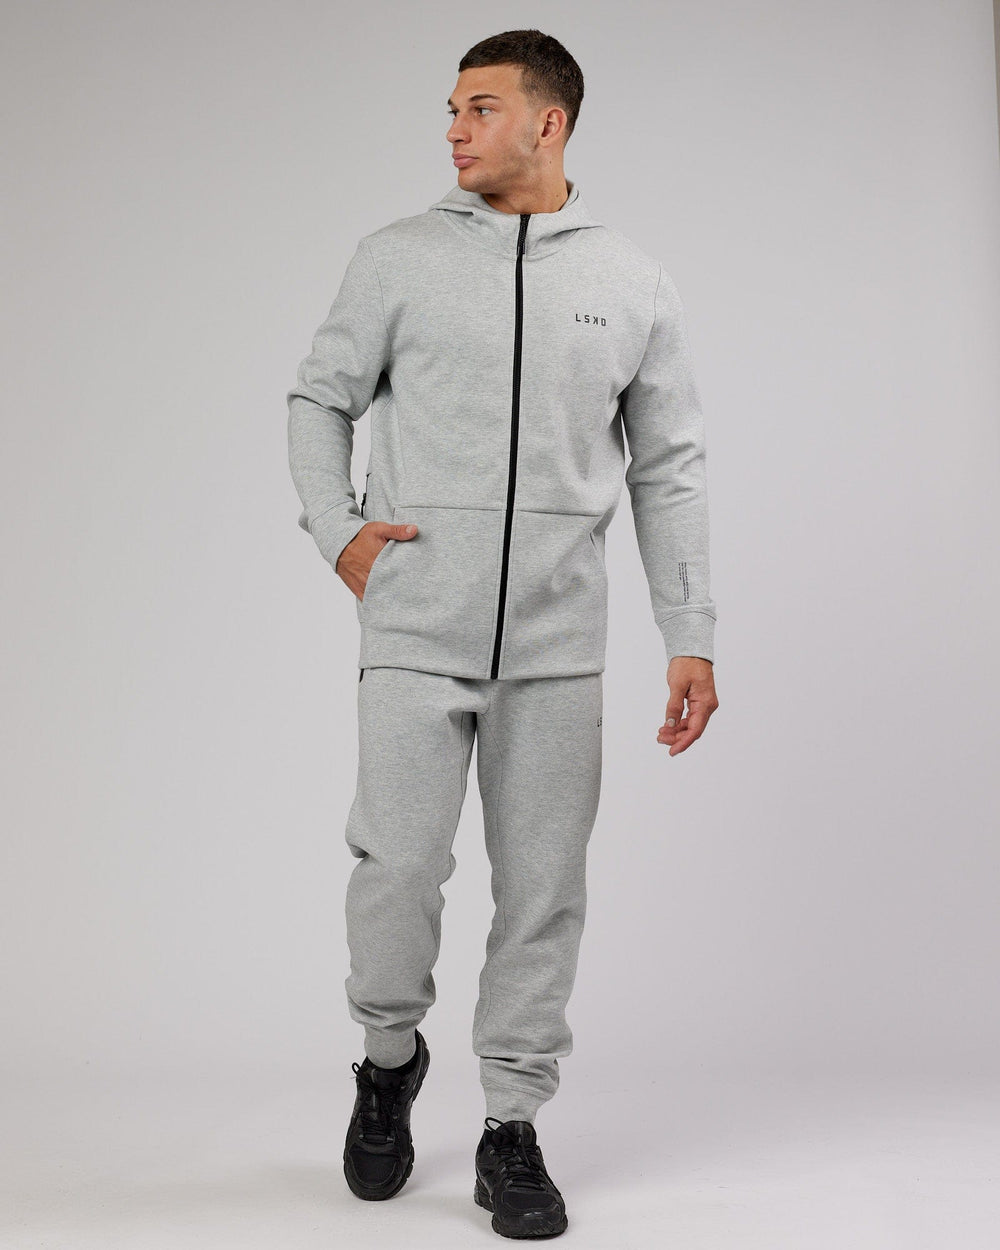 Man wearing Athlete ForgedFleece Zip Up Hoodie - Lt Grey Marl